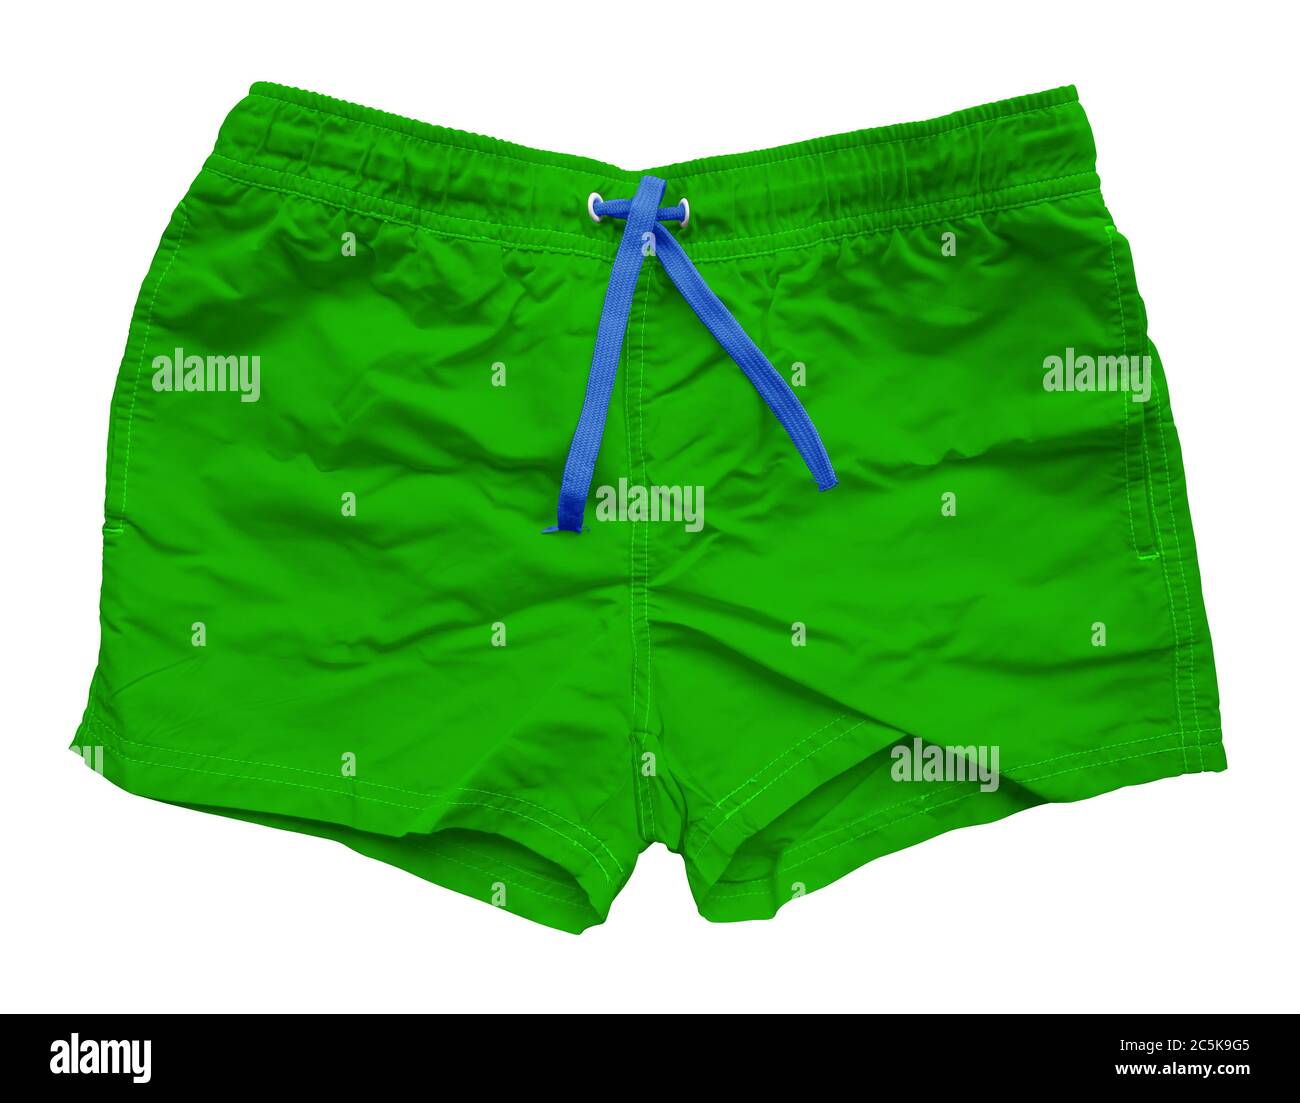 Pantaloncini verdi sportivi isolati su sfondo bianco. Tracciato di ritaglio incluso. Foto Stock